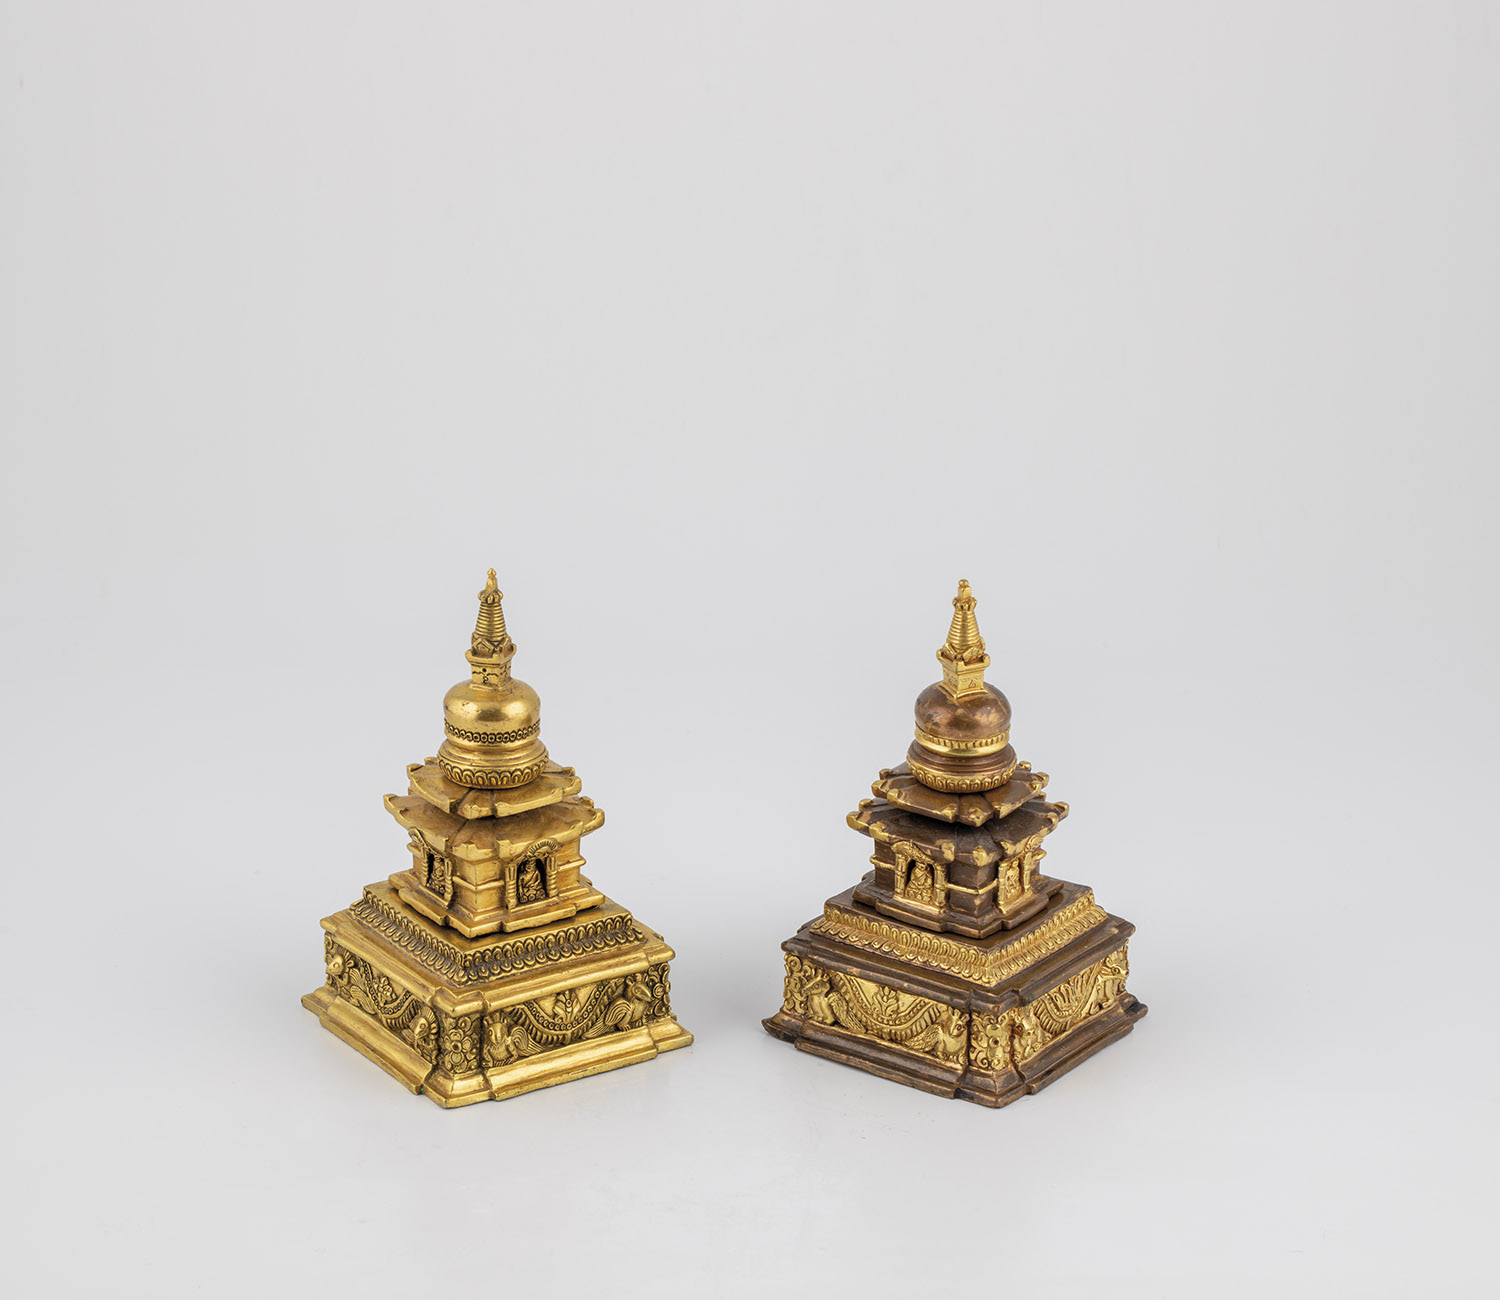 Convolute two stupa